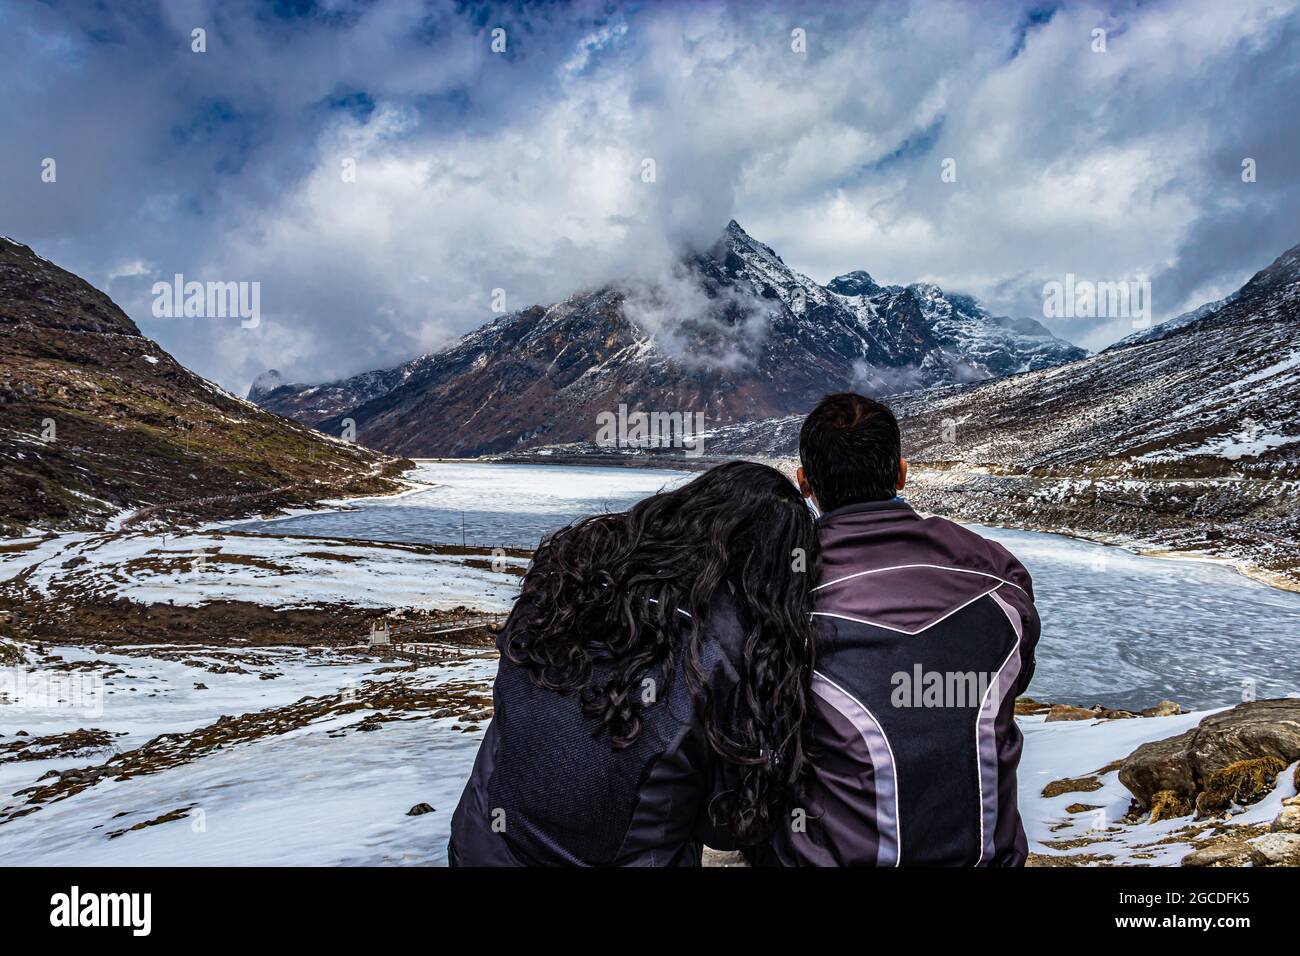 Isoliertes junges Paar, das auf der Bergspitze sitzt und am Tag einen dramatischen Himmel zeigt, wurde am sela-Pass tawang arunachal pradesh india aufgenommen. Stockfoto